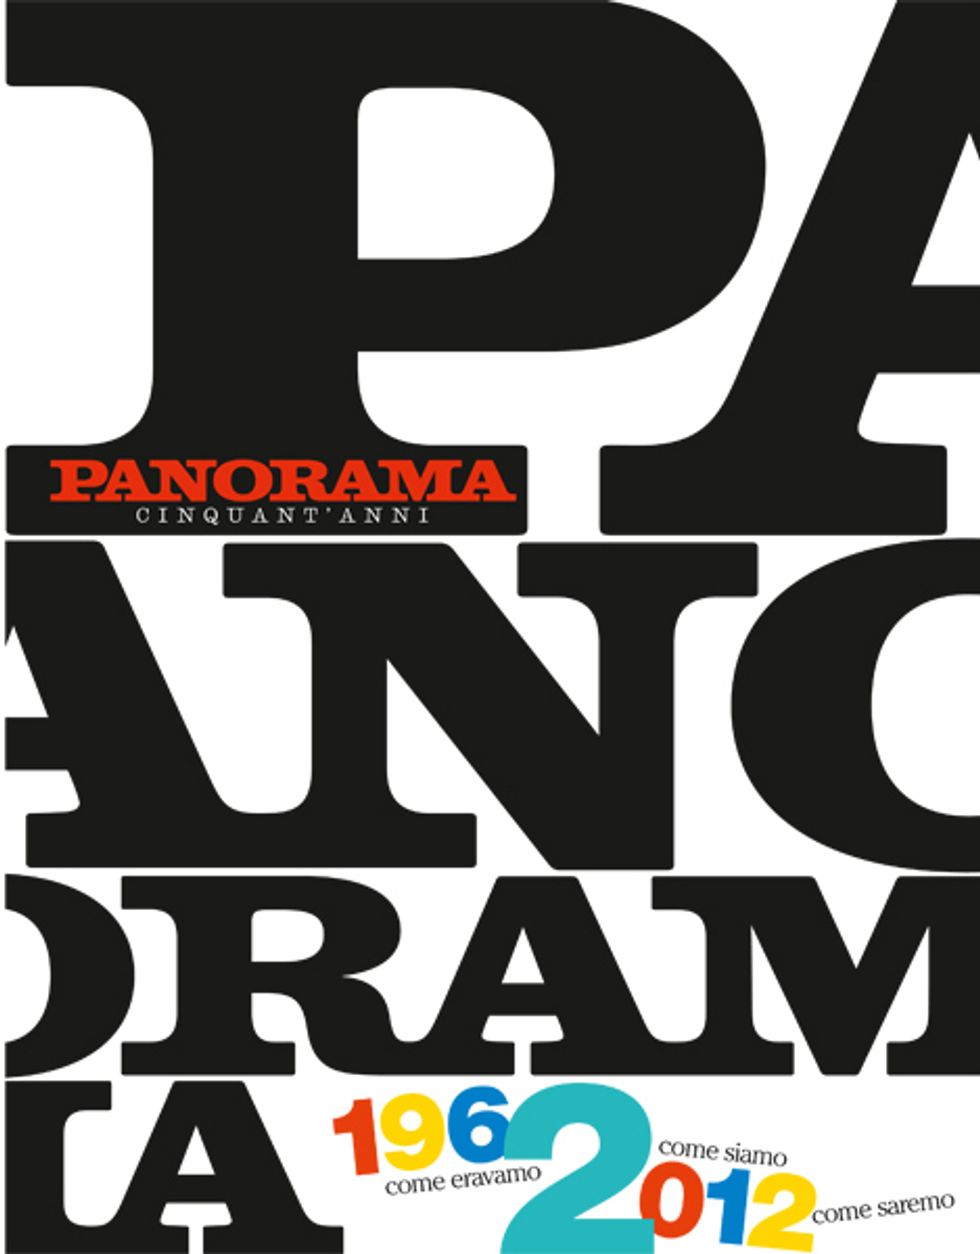 50 anni di Panorama, un'edizione speciale per festeggiarli